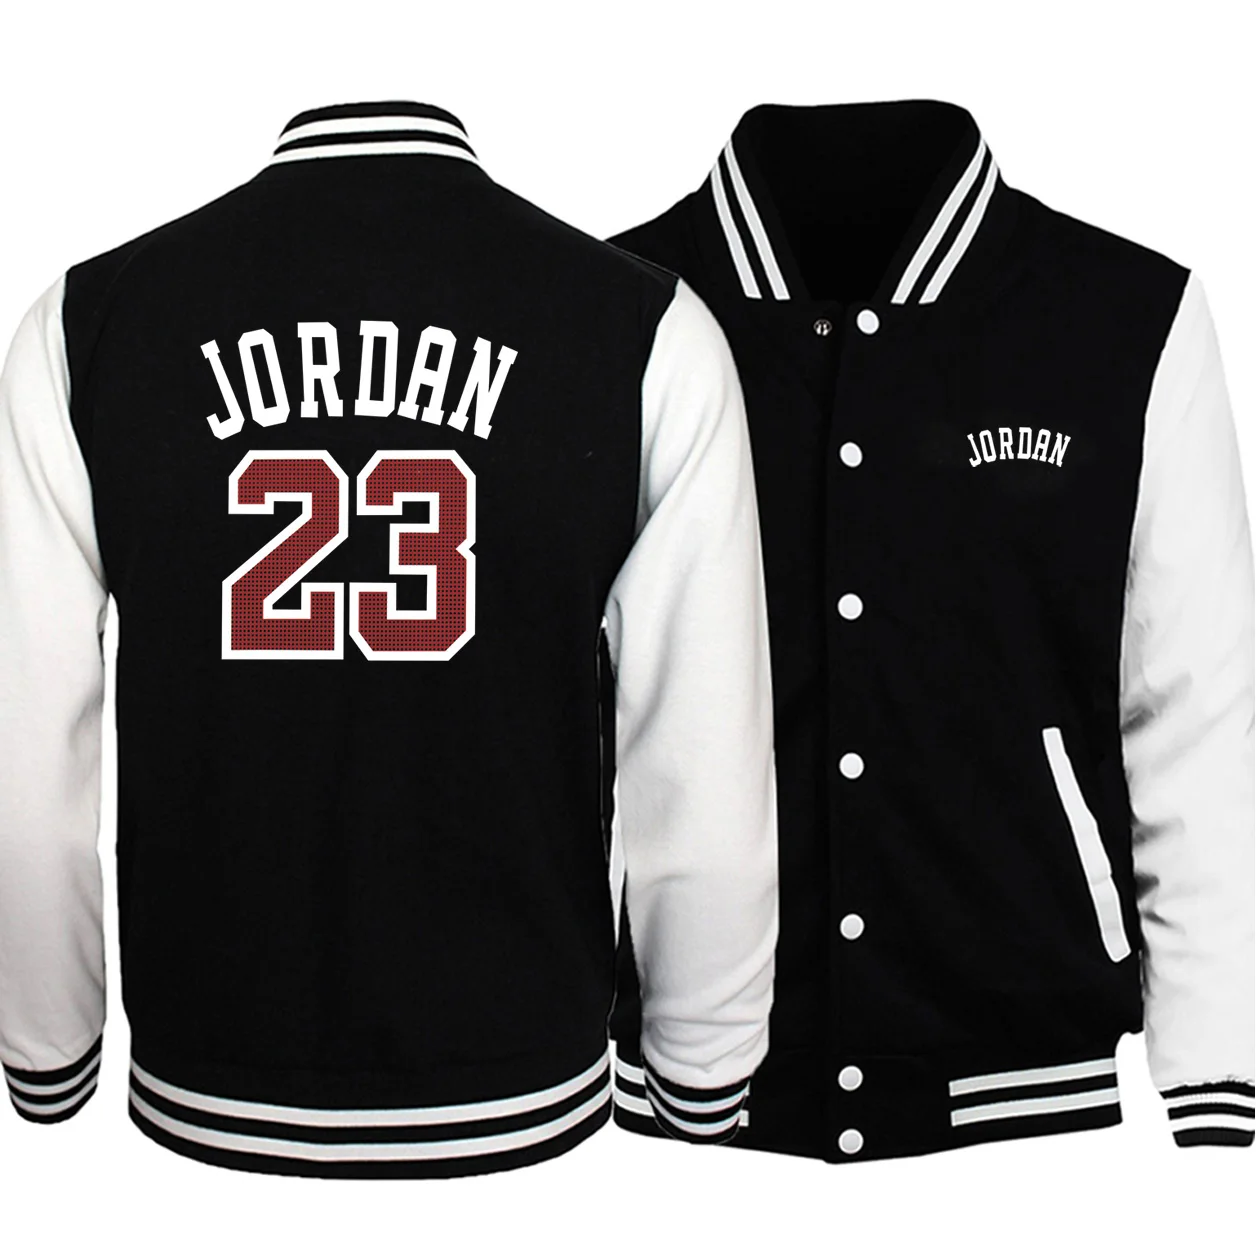 Новое поступление Jordan 23 бейсбольные куртки для мужчин хип-хоп Мужская куртка брендовая одежда облегающий спортивный костюм для мужчин бодиутеплитель модное пальто - Цвет: Black White 6